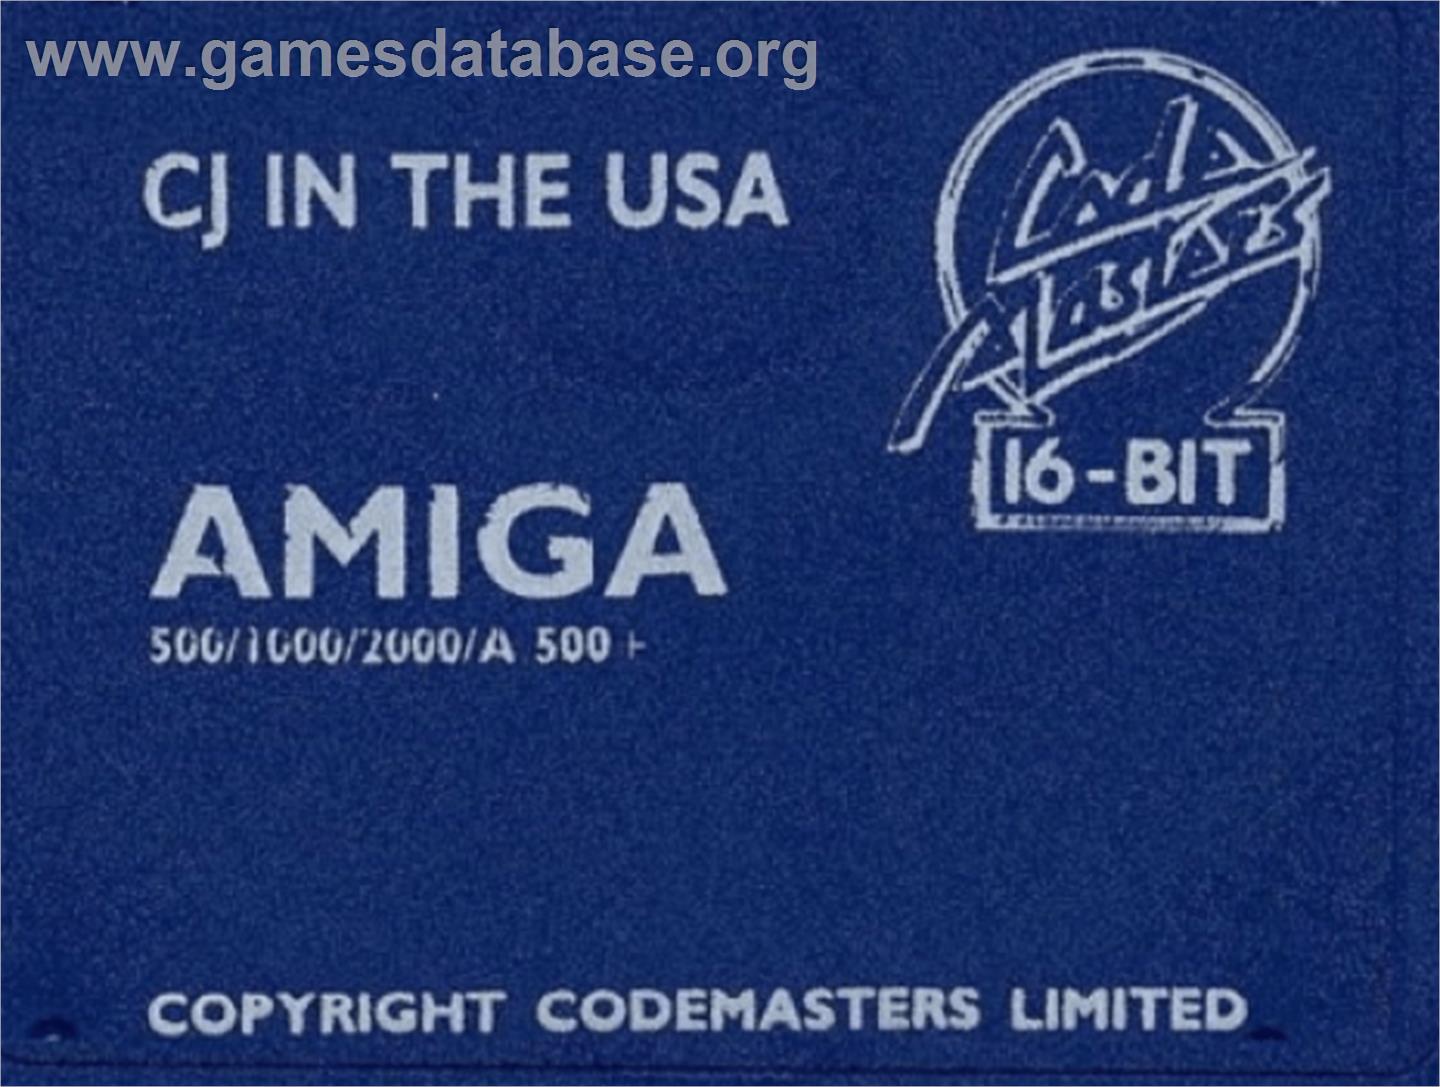 CJ In the USA - Commodore Amiga - Artwork - Cartridge Top